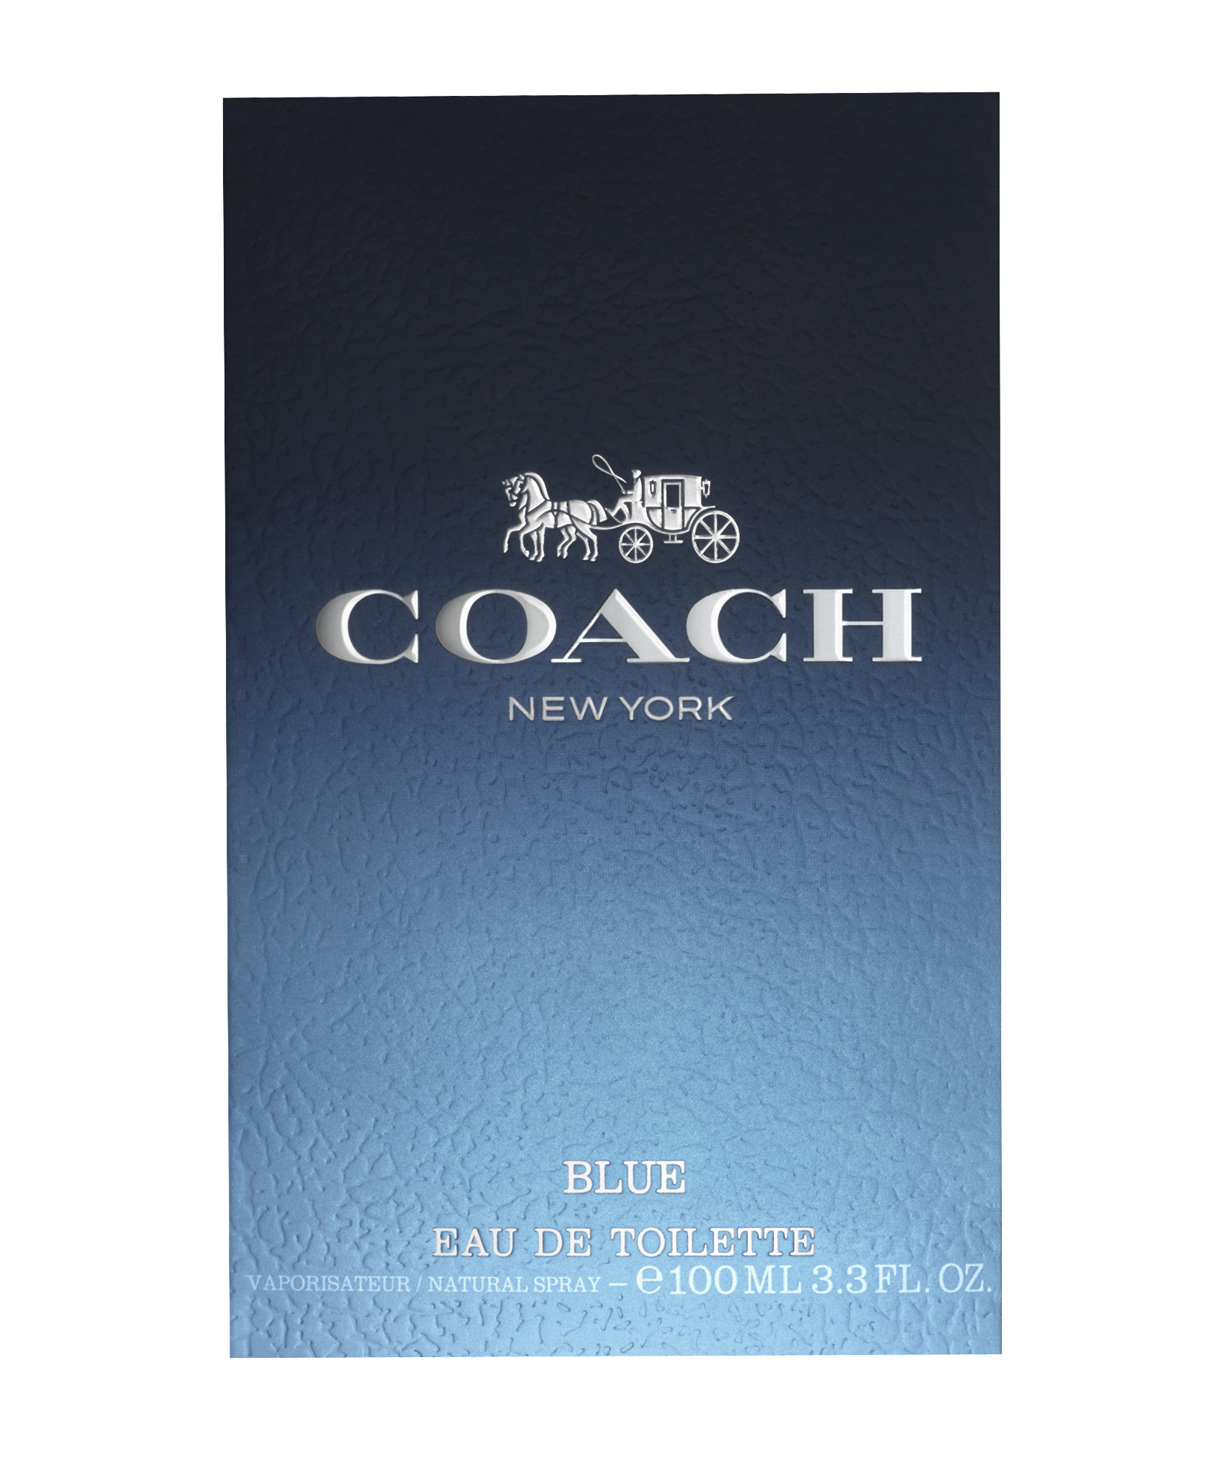 Perfume «Coach» Blue, for men, 100 ml